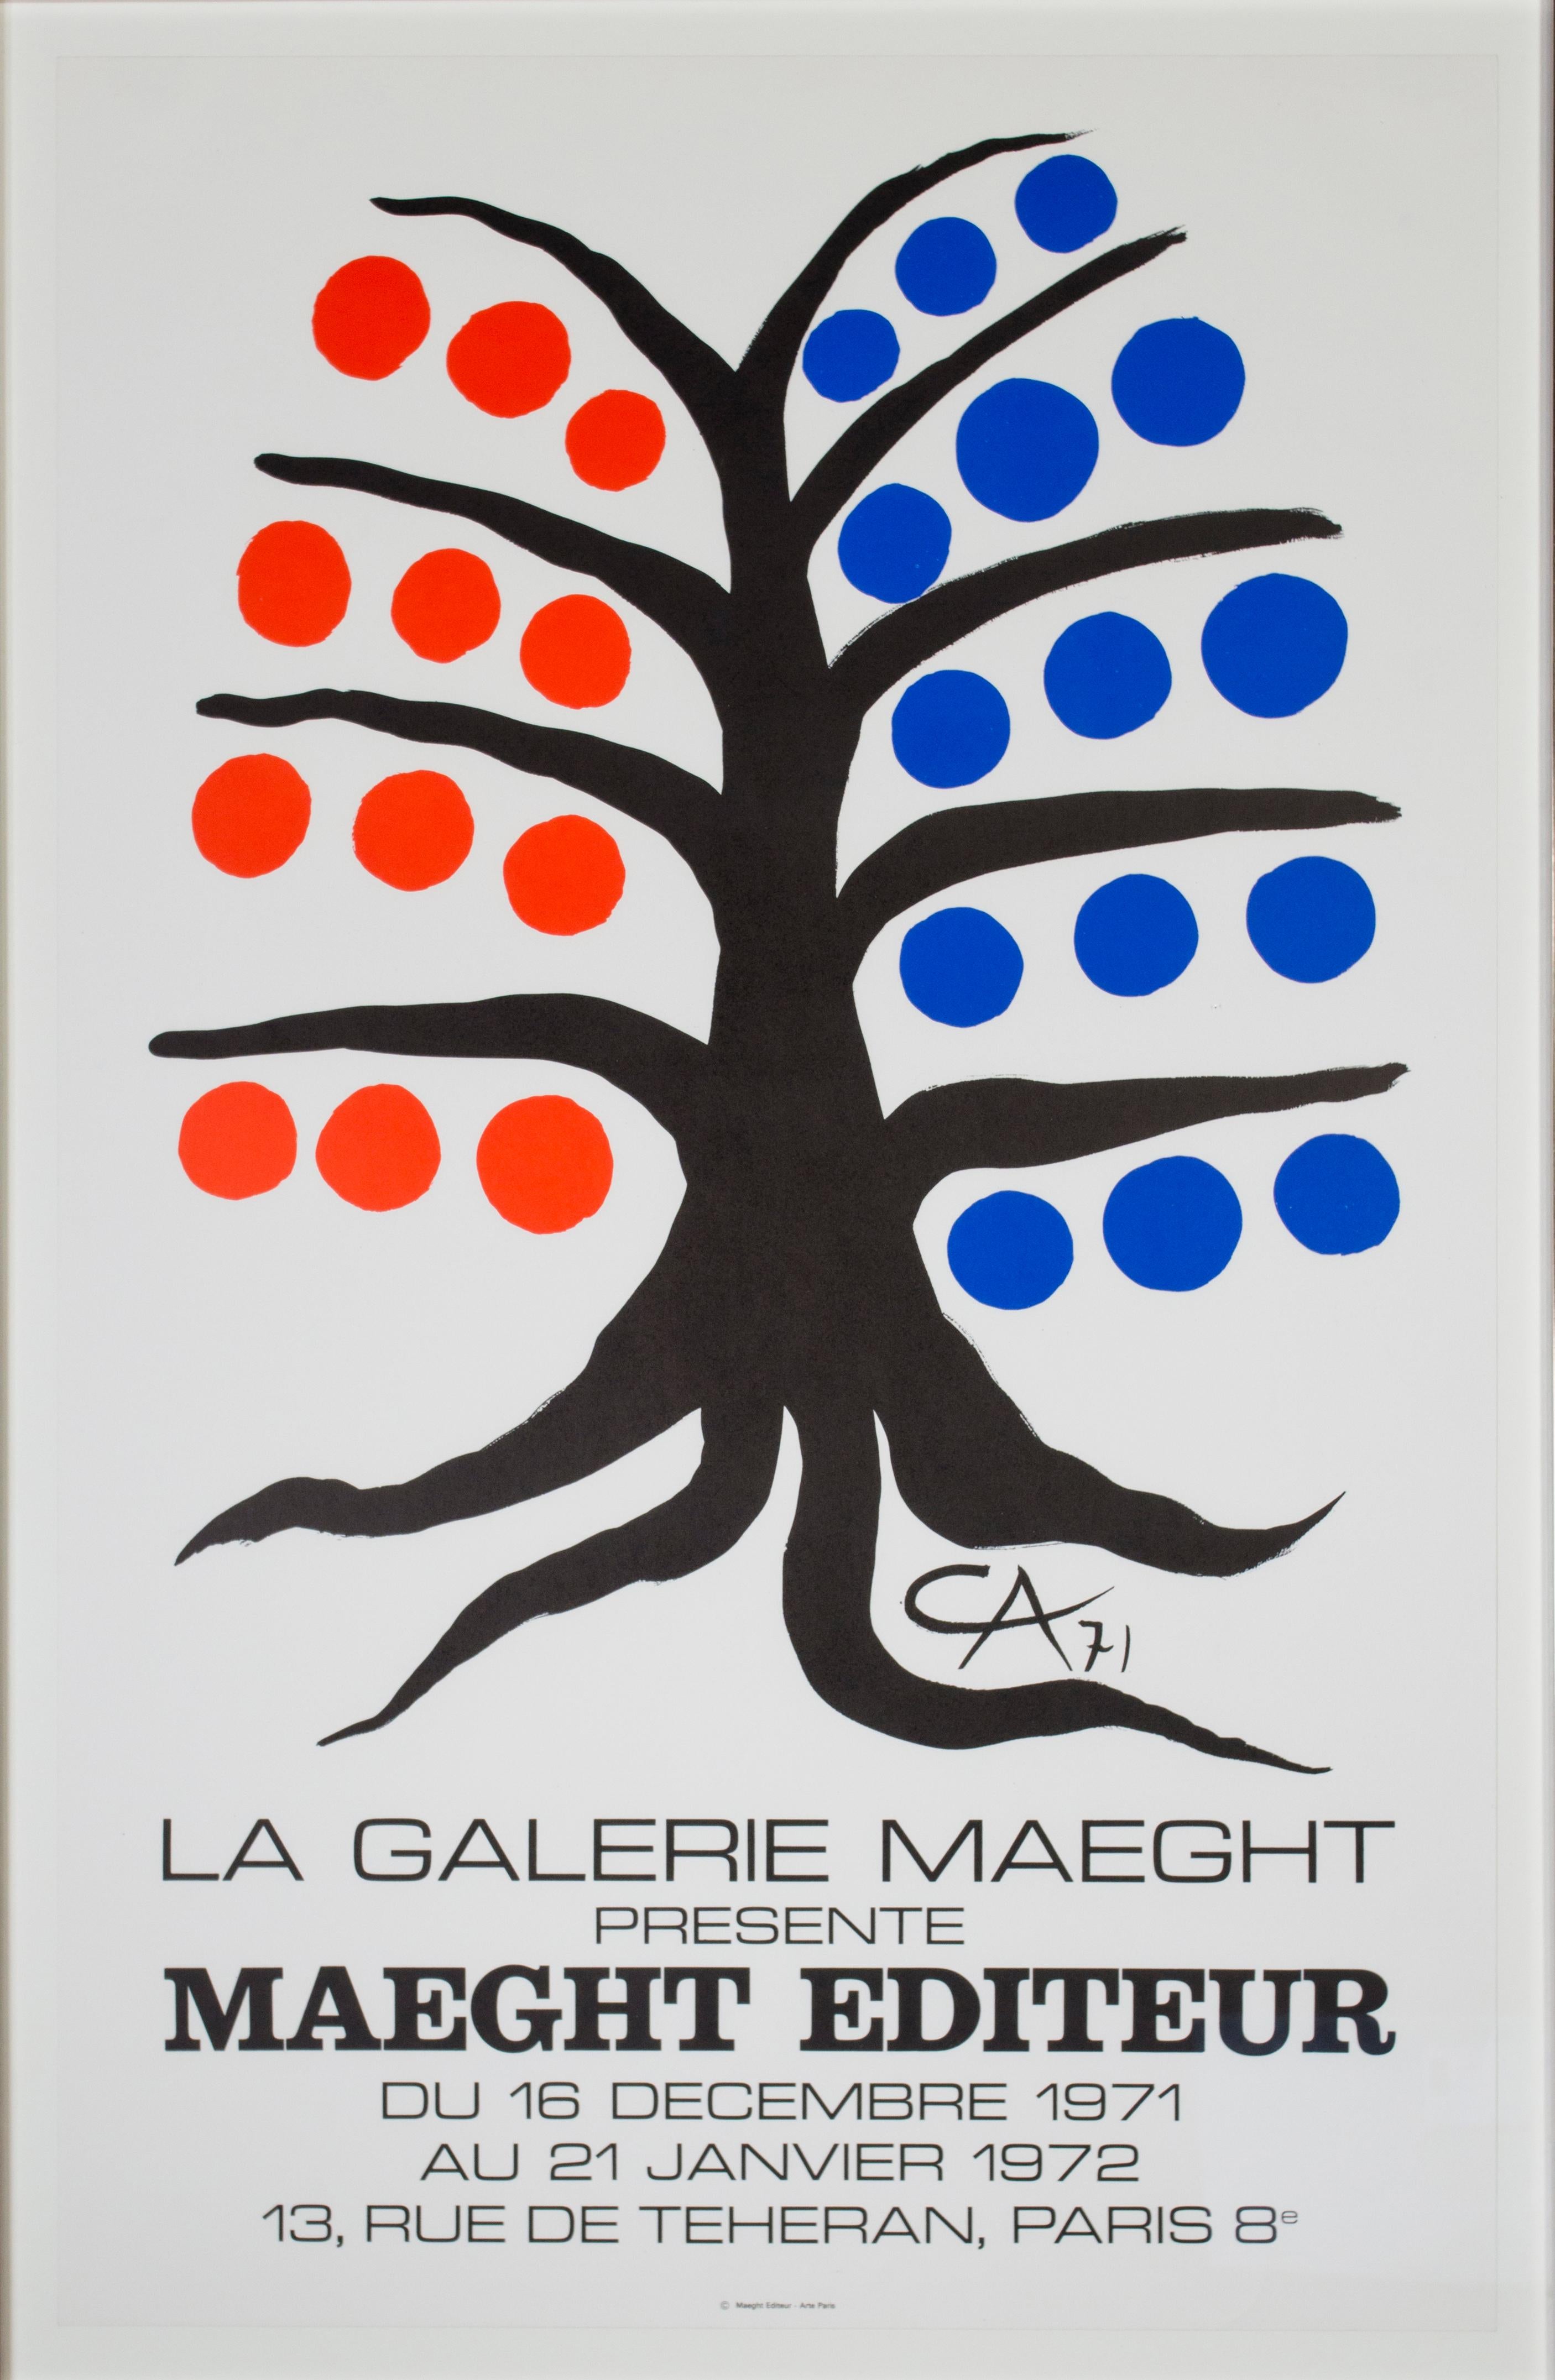 Affiche originale lithographique « Maeght Editeur » signée par Alexander Calder